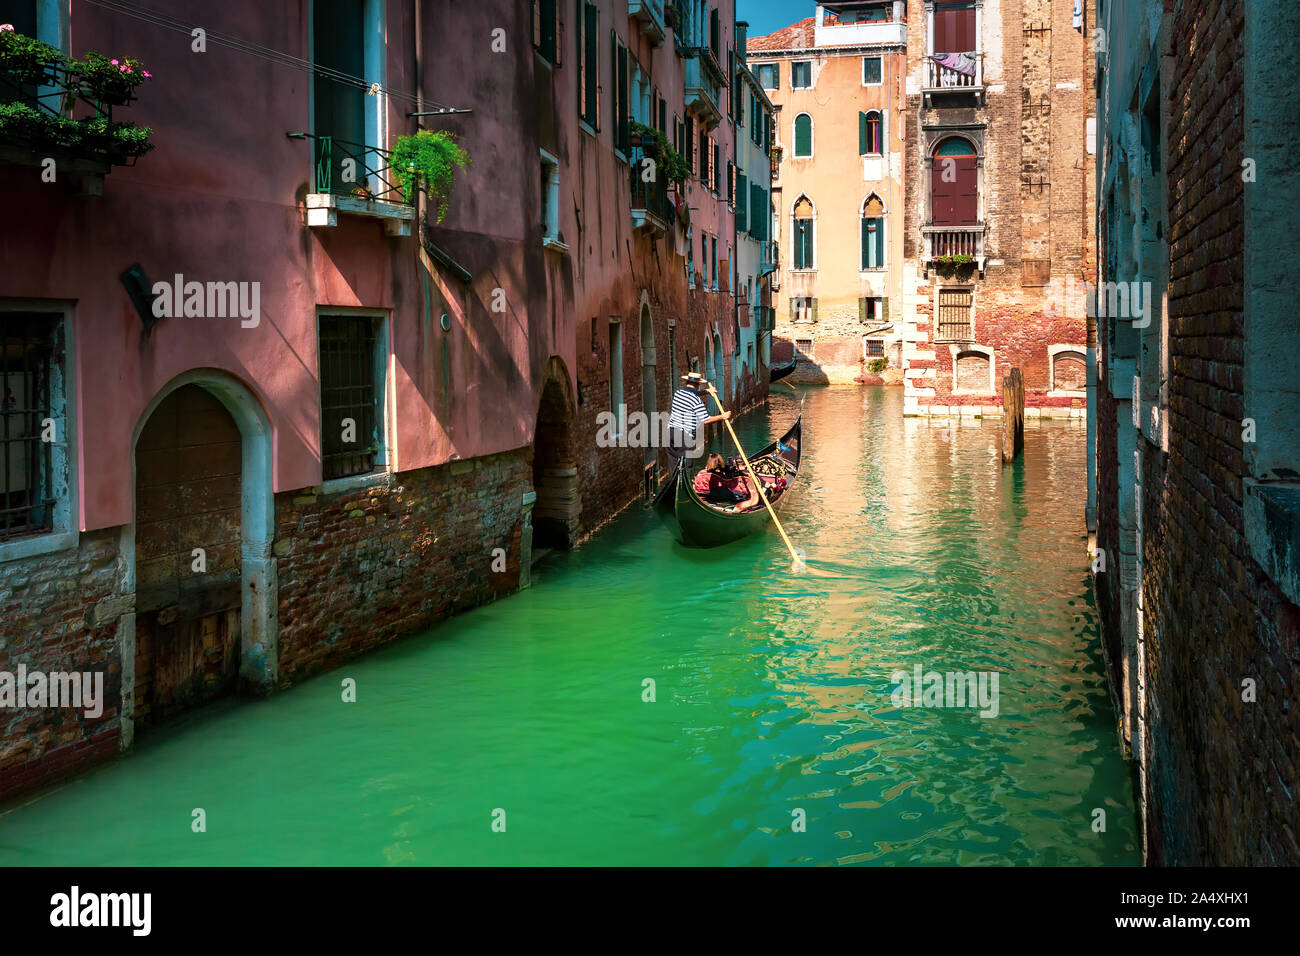 Gondolas on Canal in Venice, Italy Stock Photo